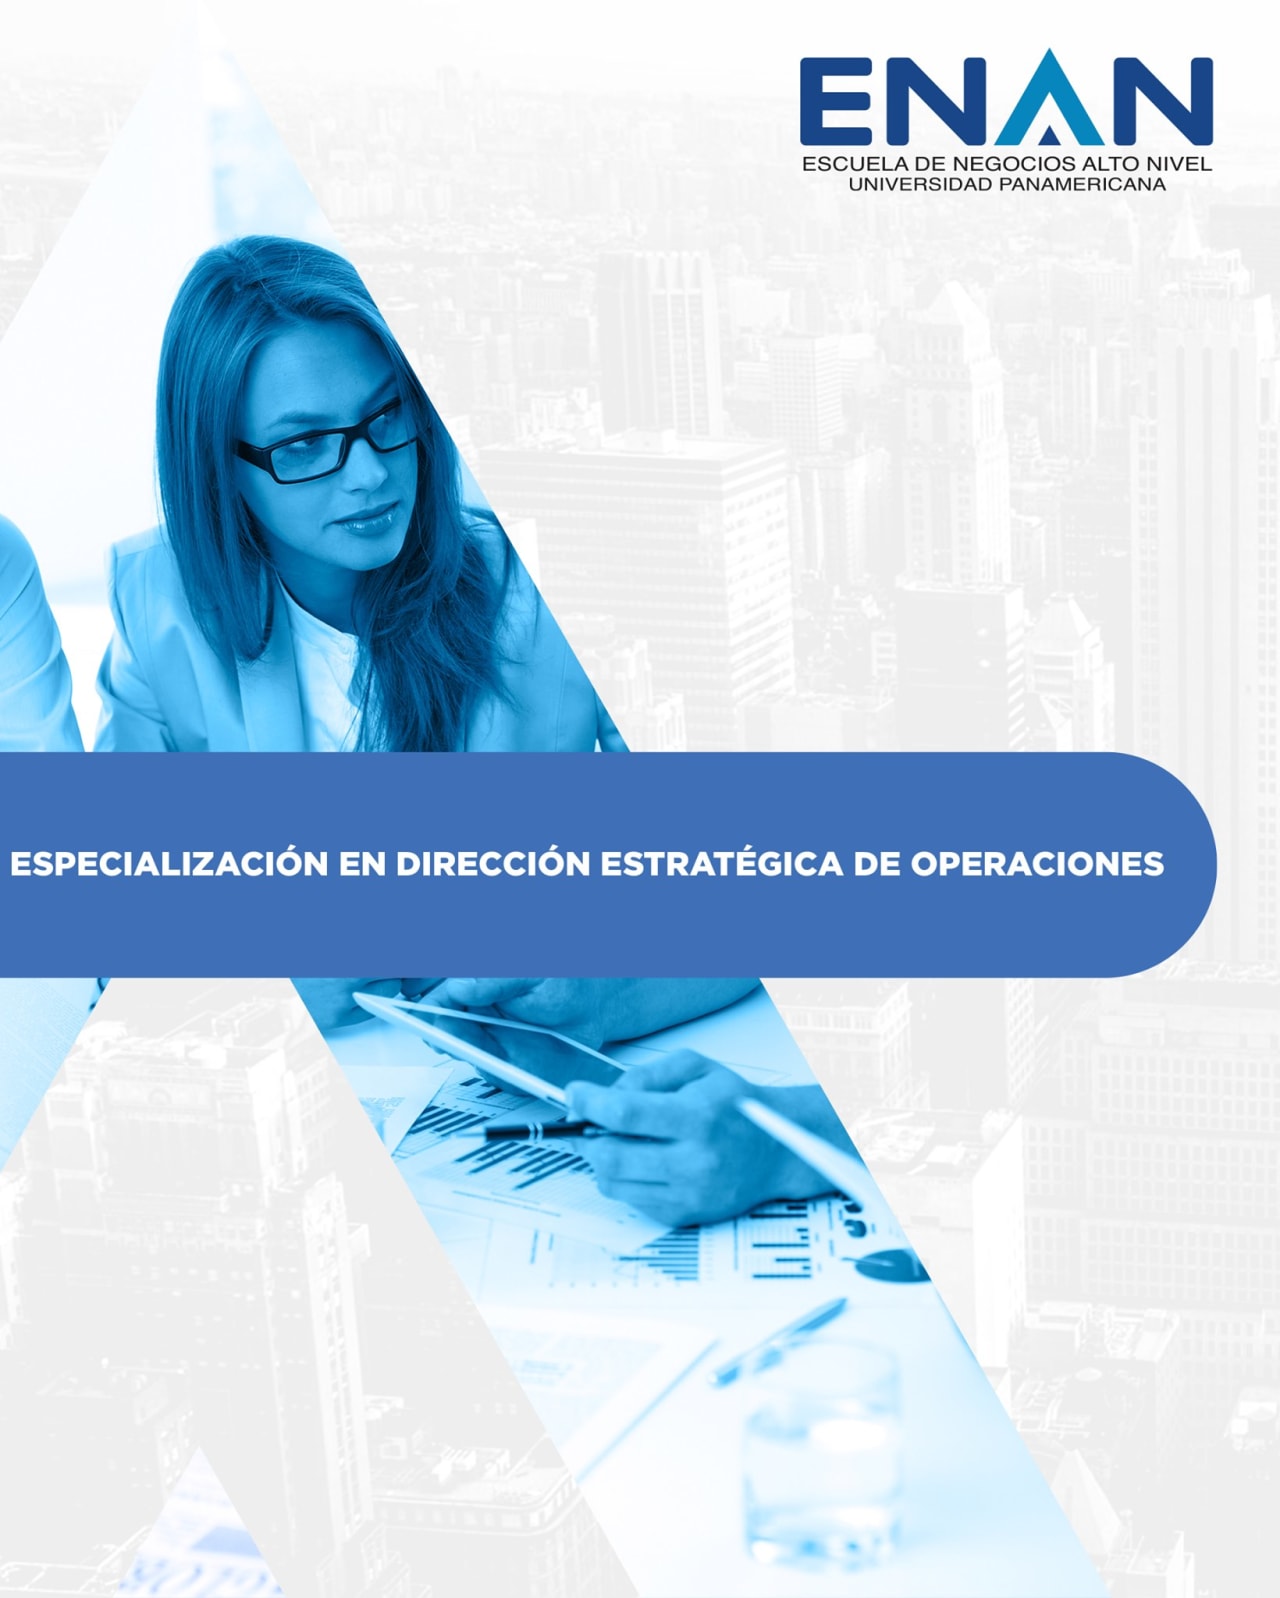 Escuela de Negocios Alto Nivel - Universidad Panamericana de Guatemala 戦略的運用管理の専門分野